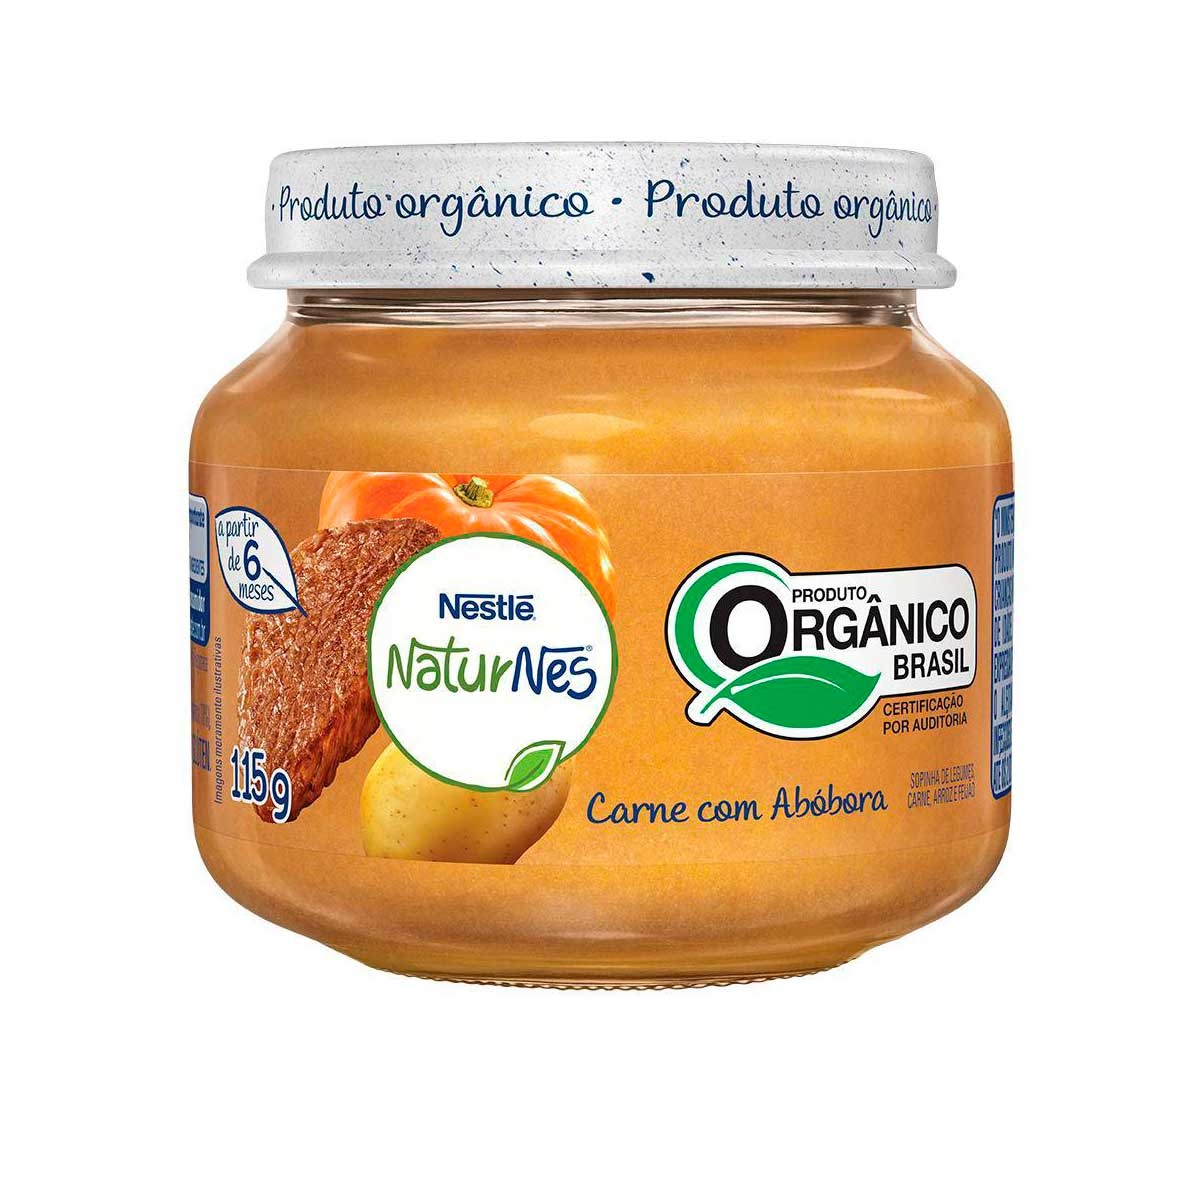 Papinha Orgânica Nestlé Naturnes Carne com Abóbora com 115g 115g